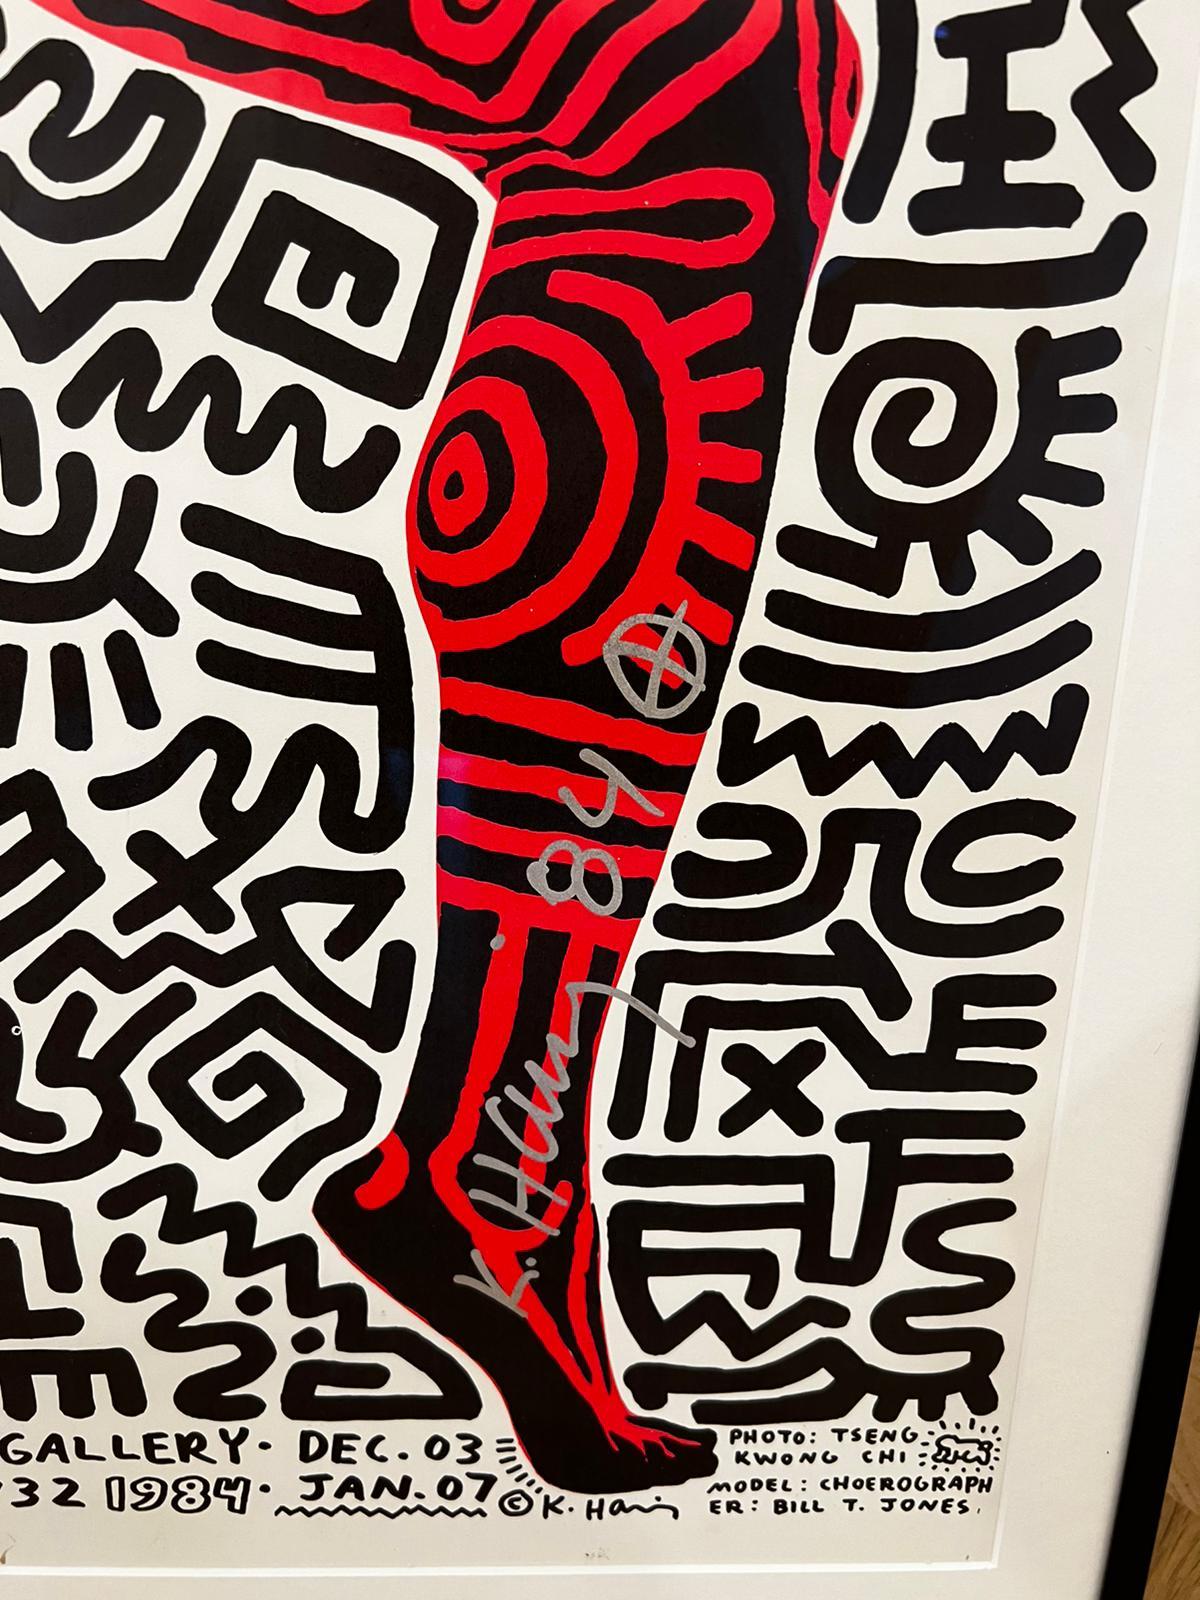 Into 84 - Impression de Keith Haring, signature rare 2